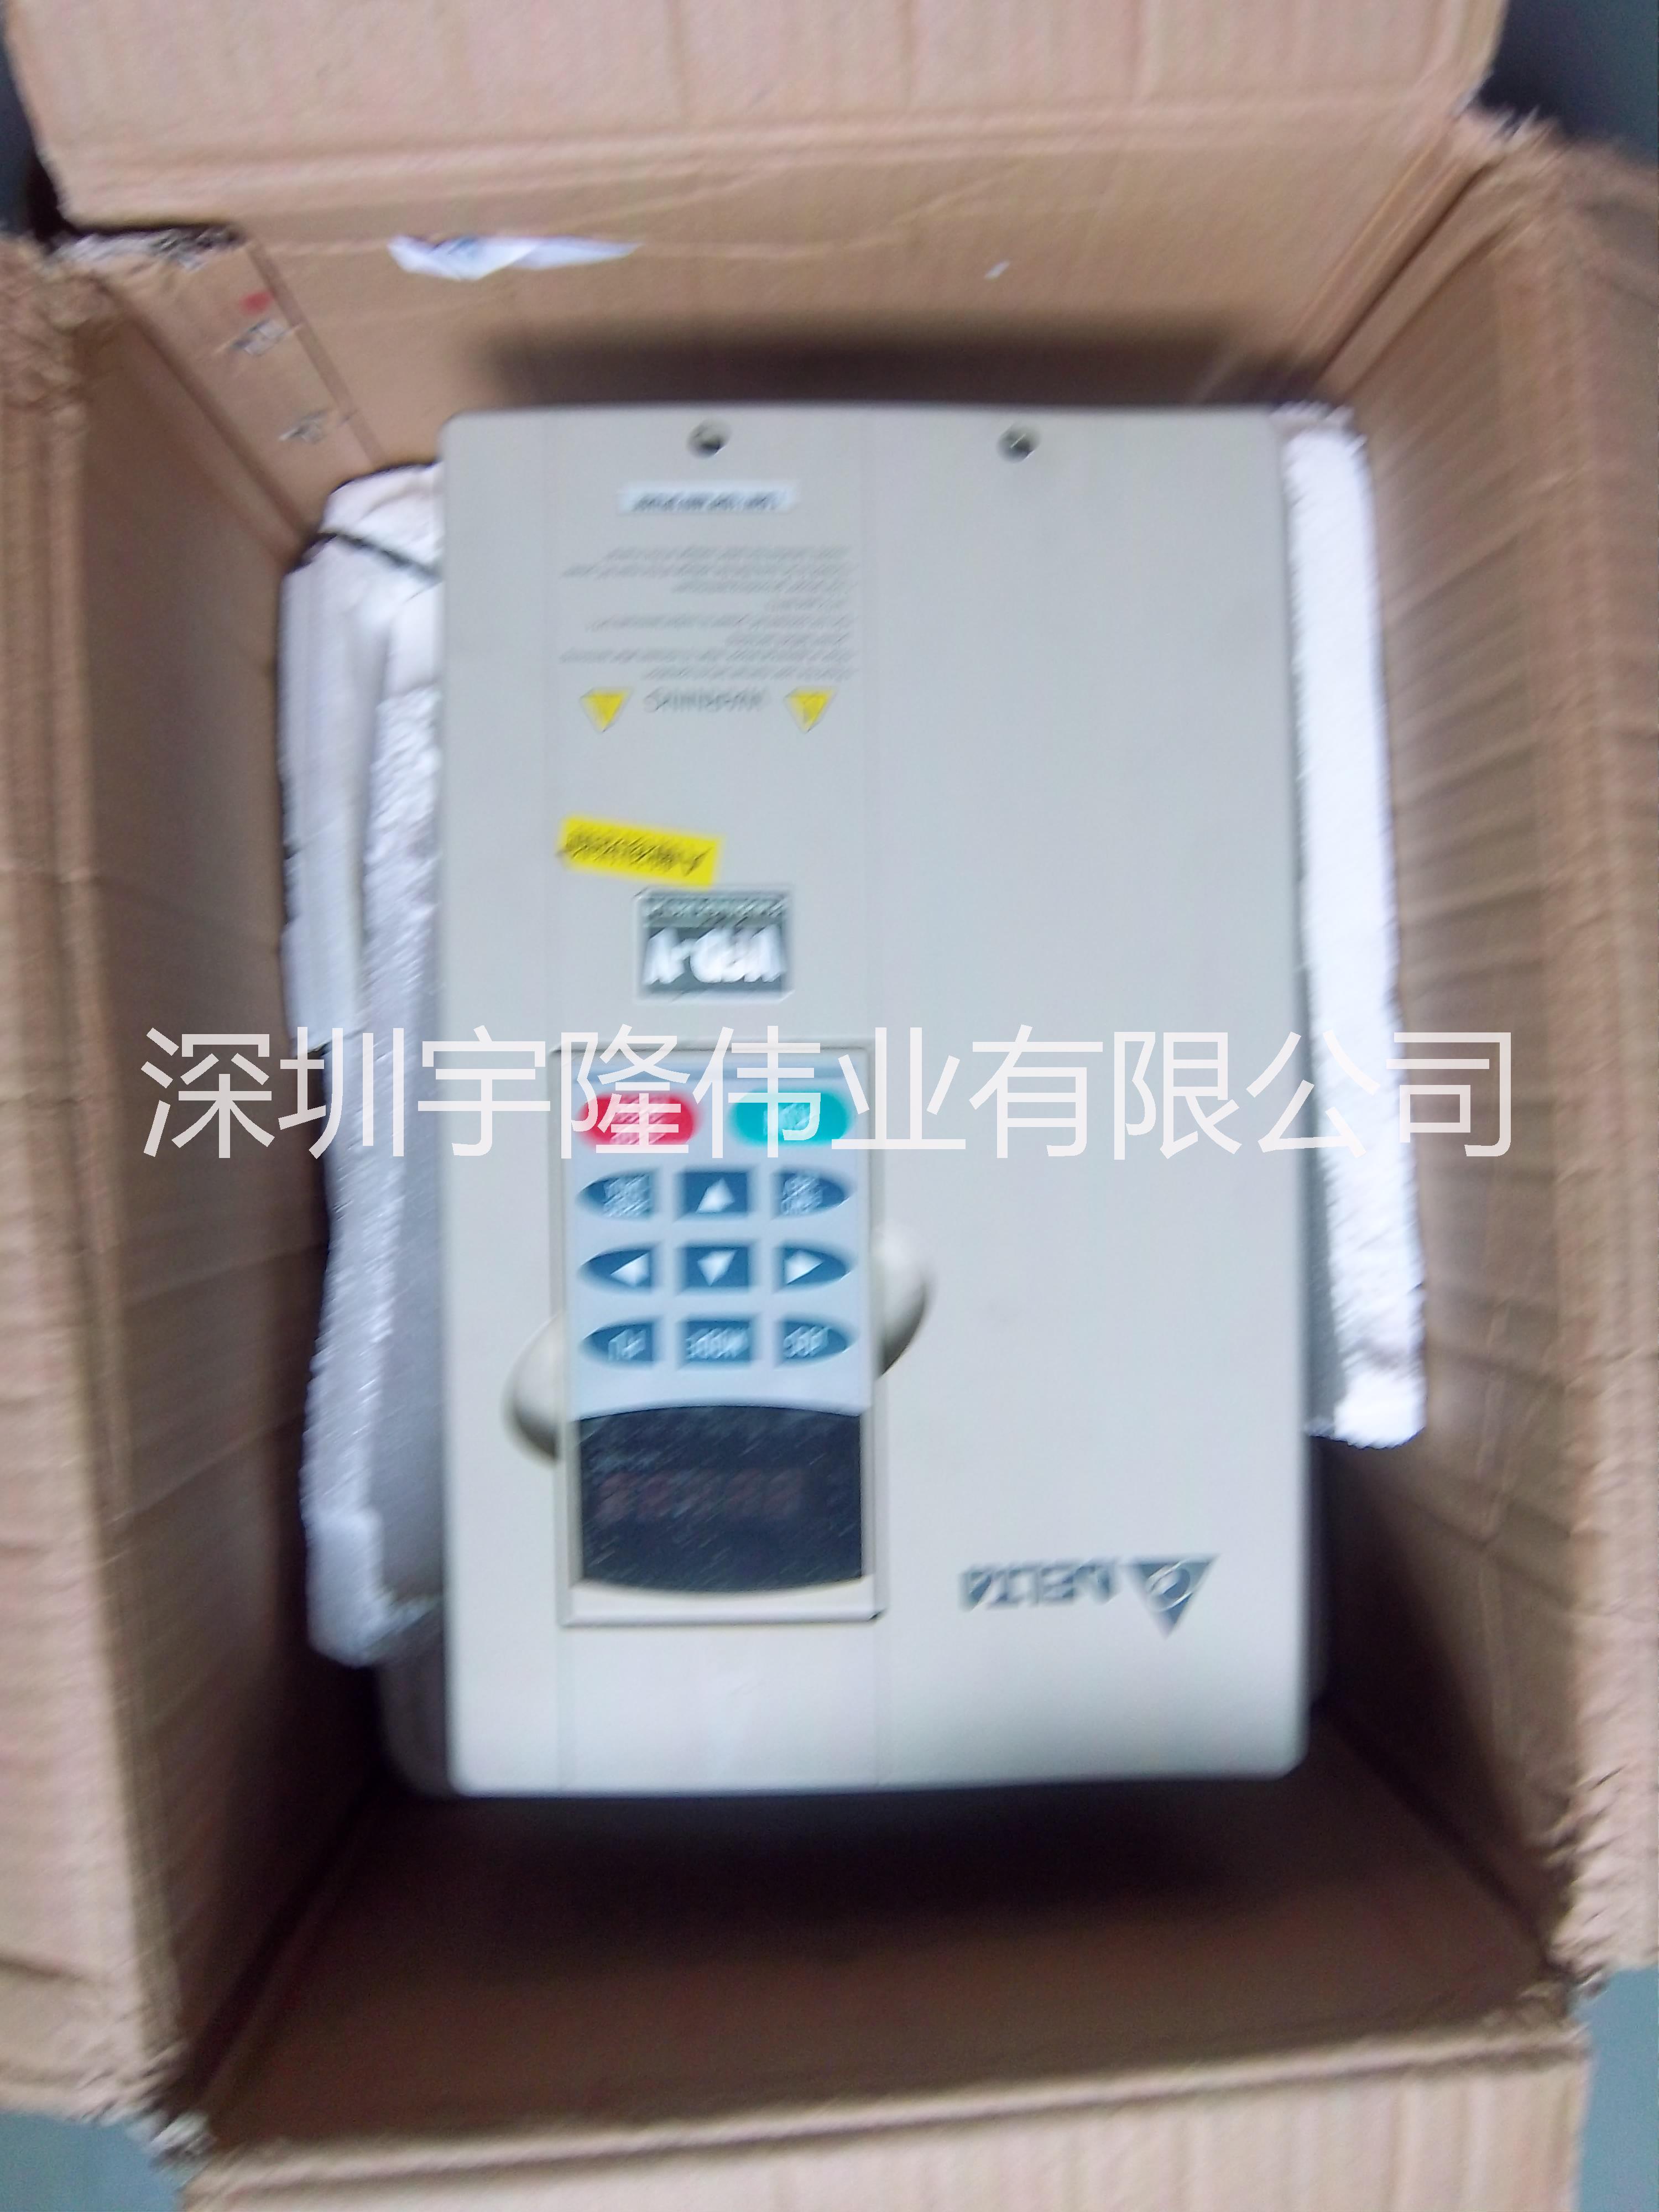 深圳市台达变频器VFD022M21A厂家